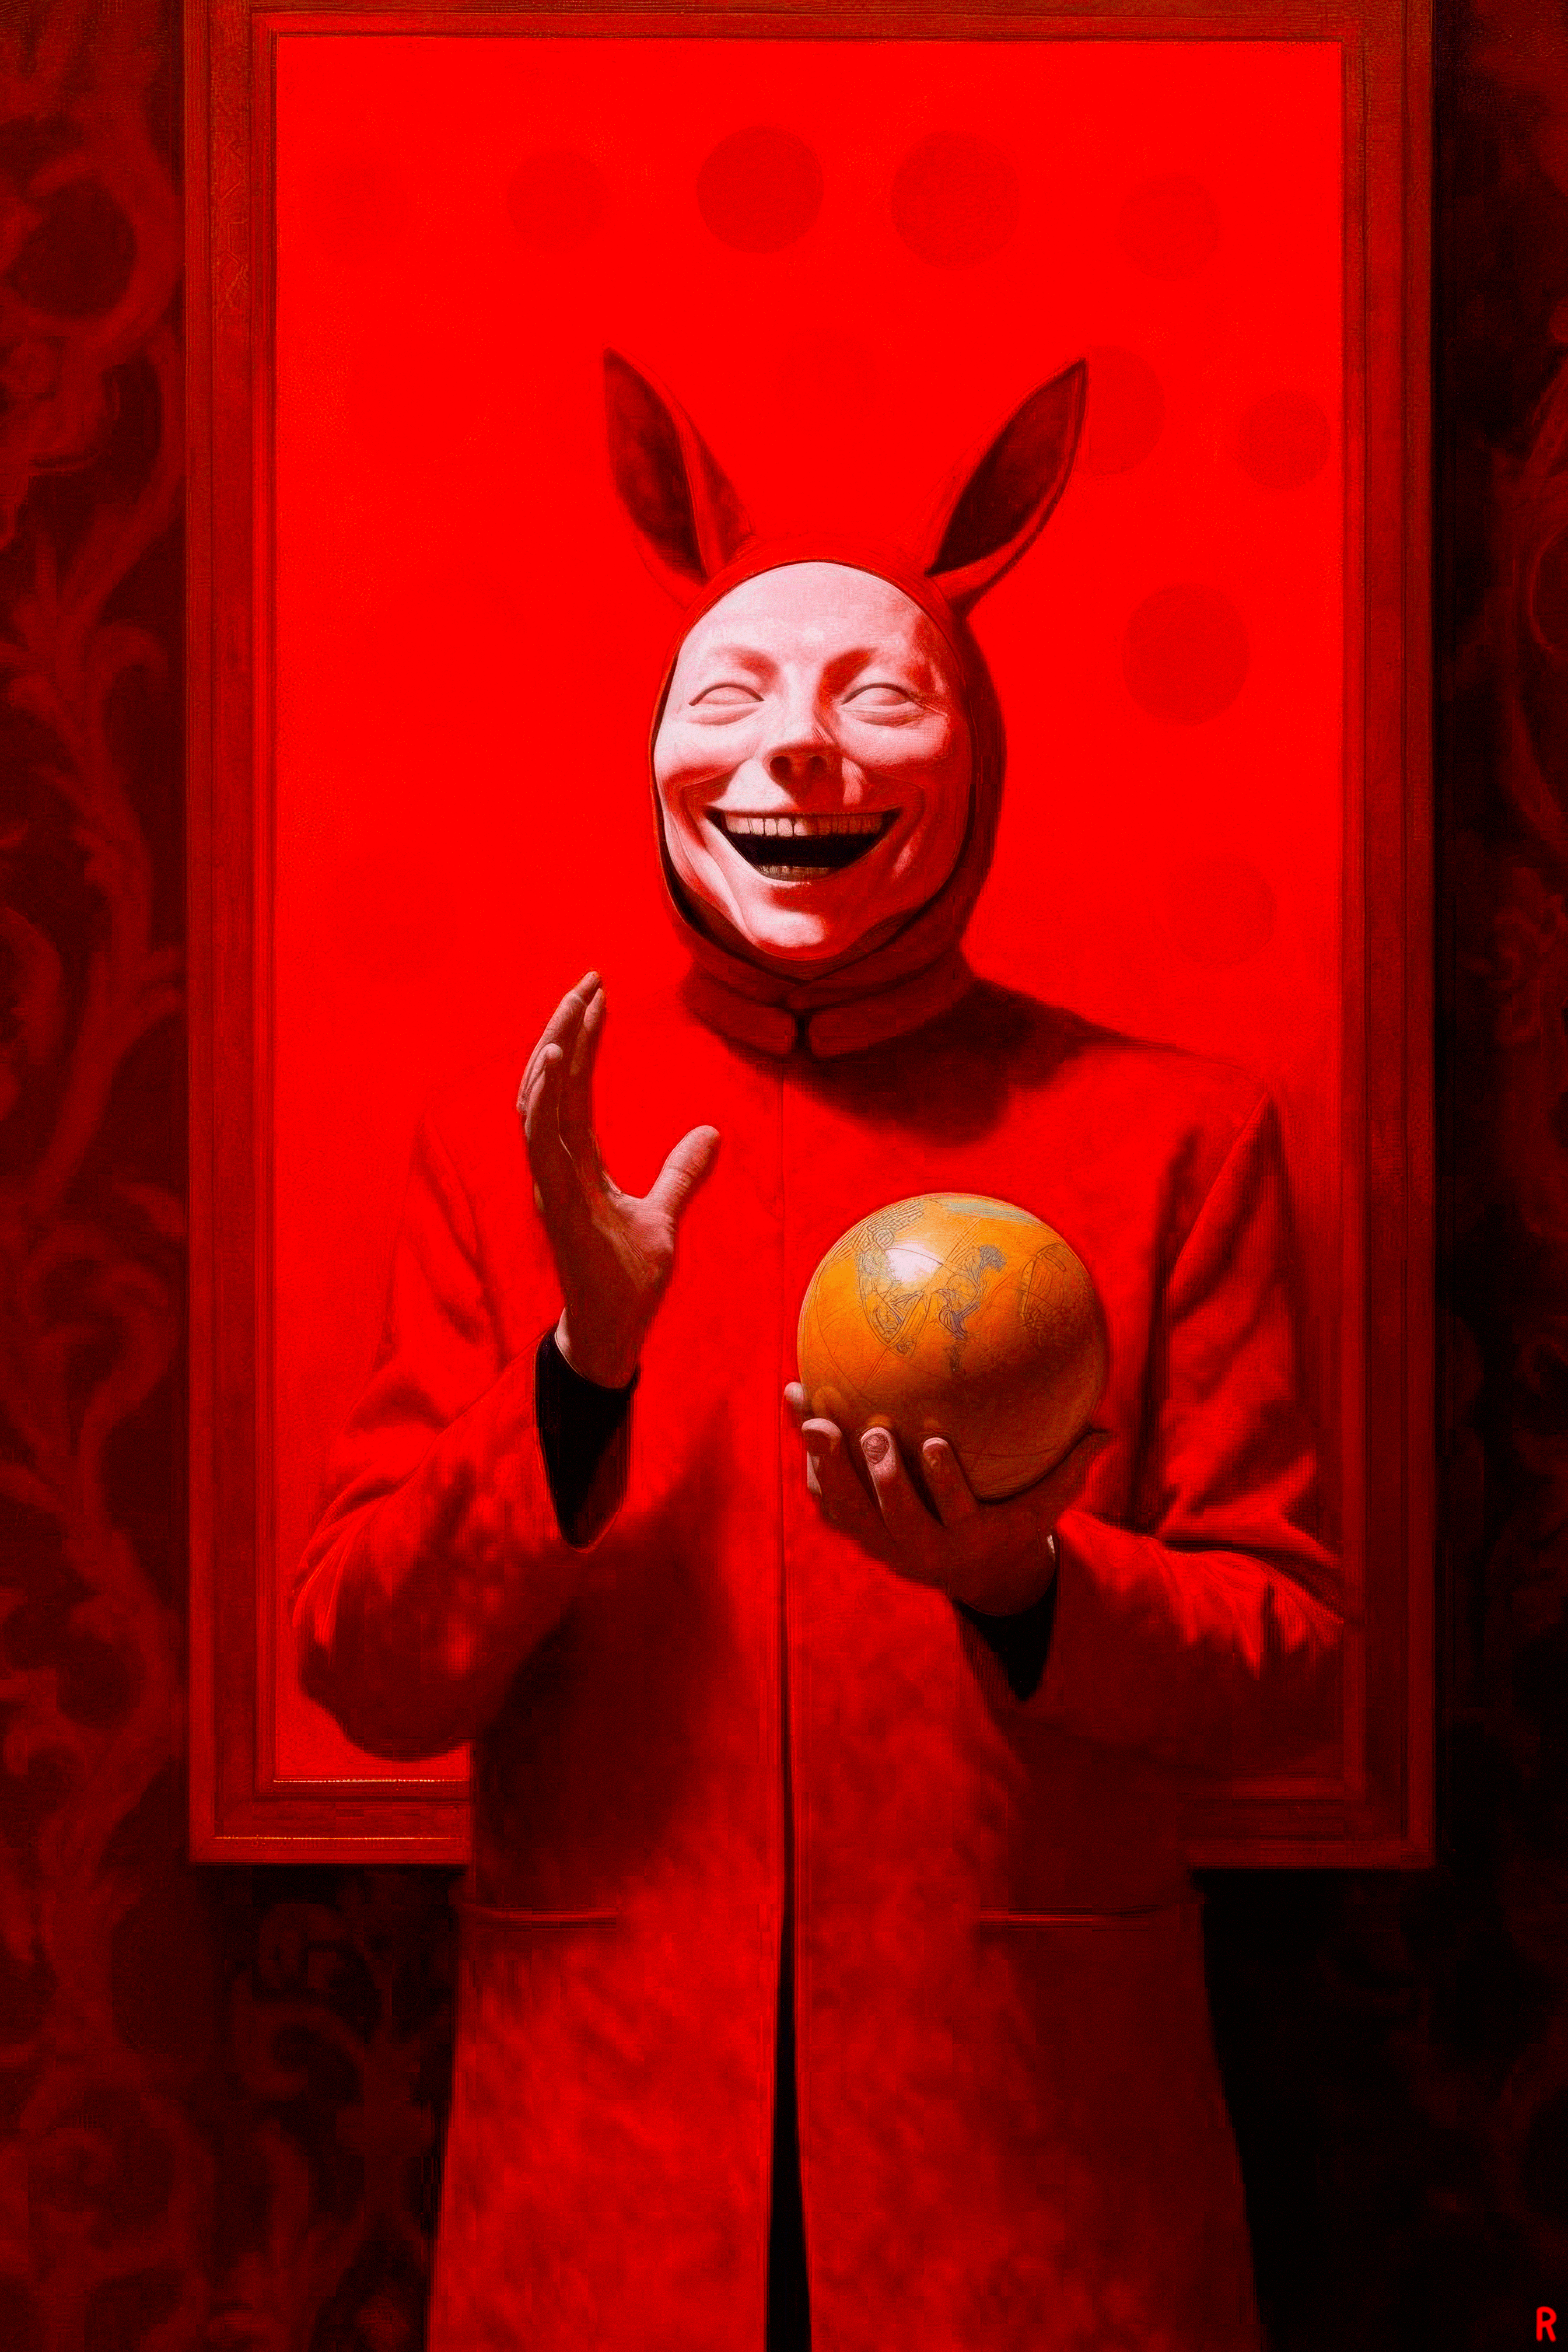 Fear the rabbit hole #5/39